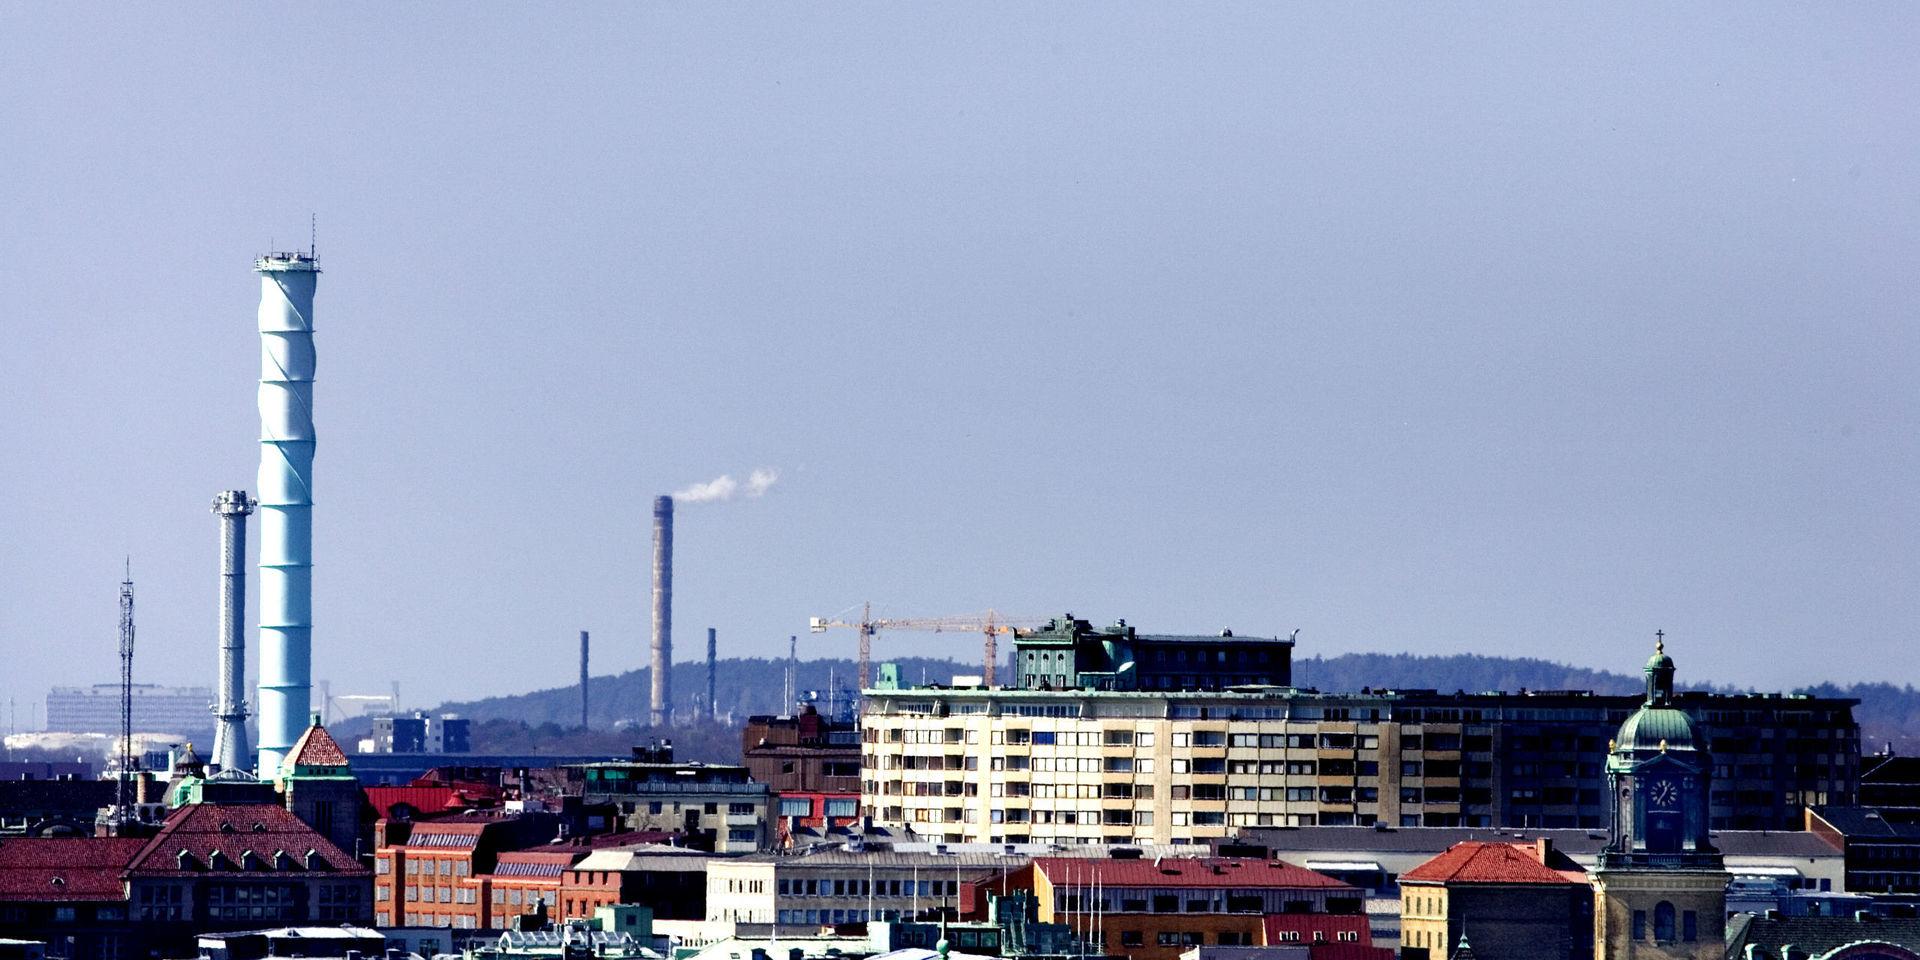 Göteborgs stad placerar sig på plats 216 i Svenskt näringslivs ranking av näringslivsklimatet i landets kommuner, vilket är ett hopp uppåt från fjolårets placering (222). 